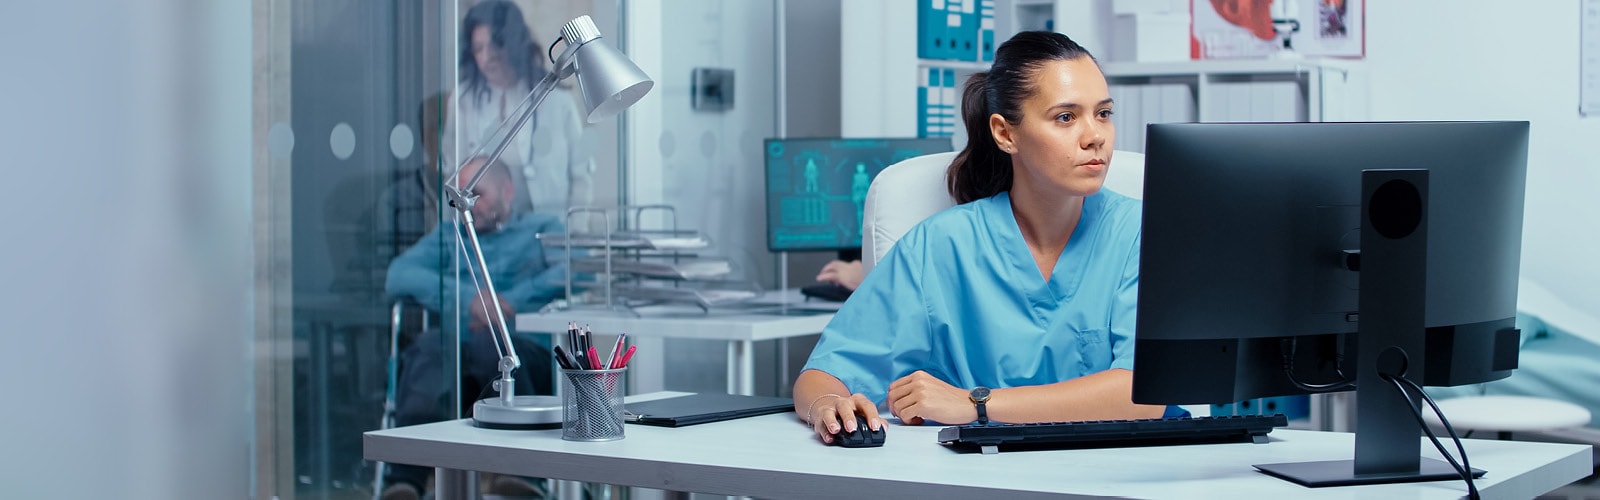 A medical worker using a desktop